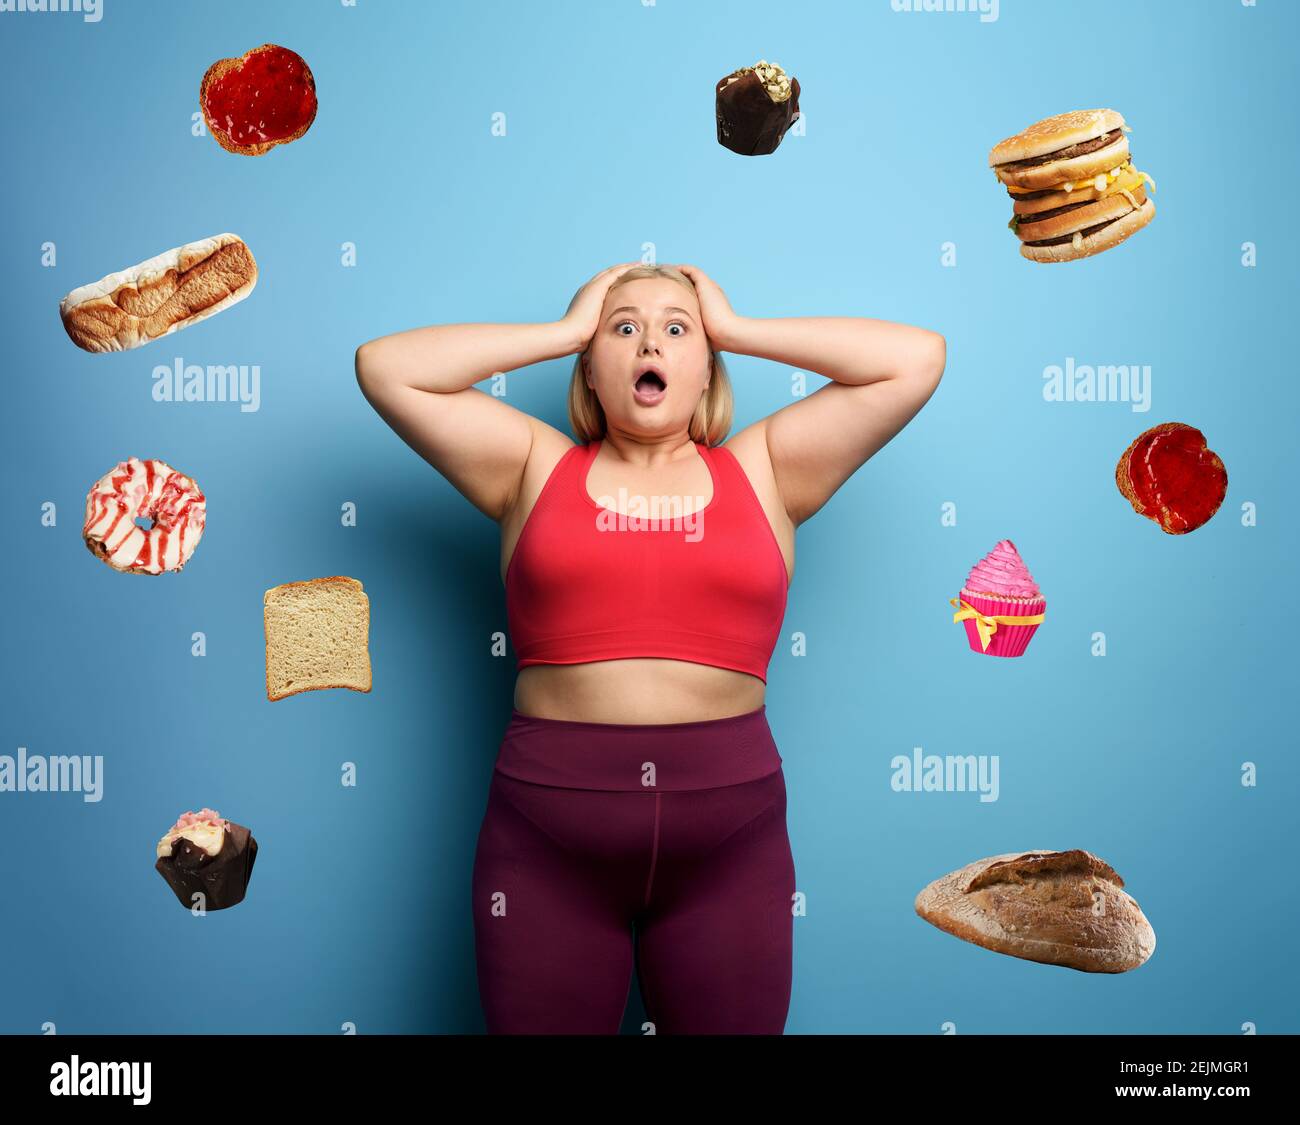 FAT girl dans la suite de fitness veut commencer un régime mais a des doutes sur la nourriture à acheter. Fond cyan Banque D'Images